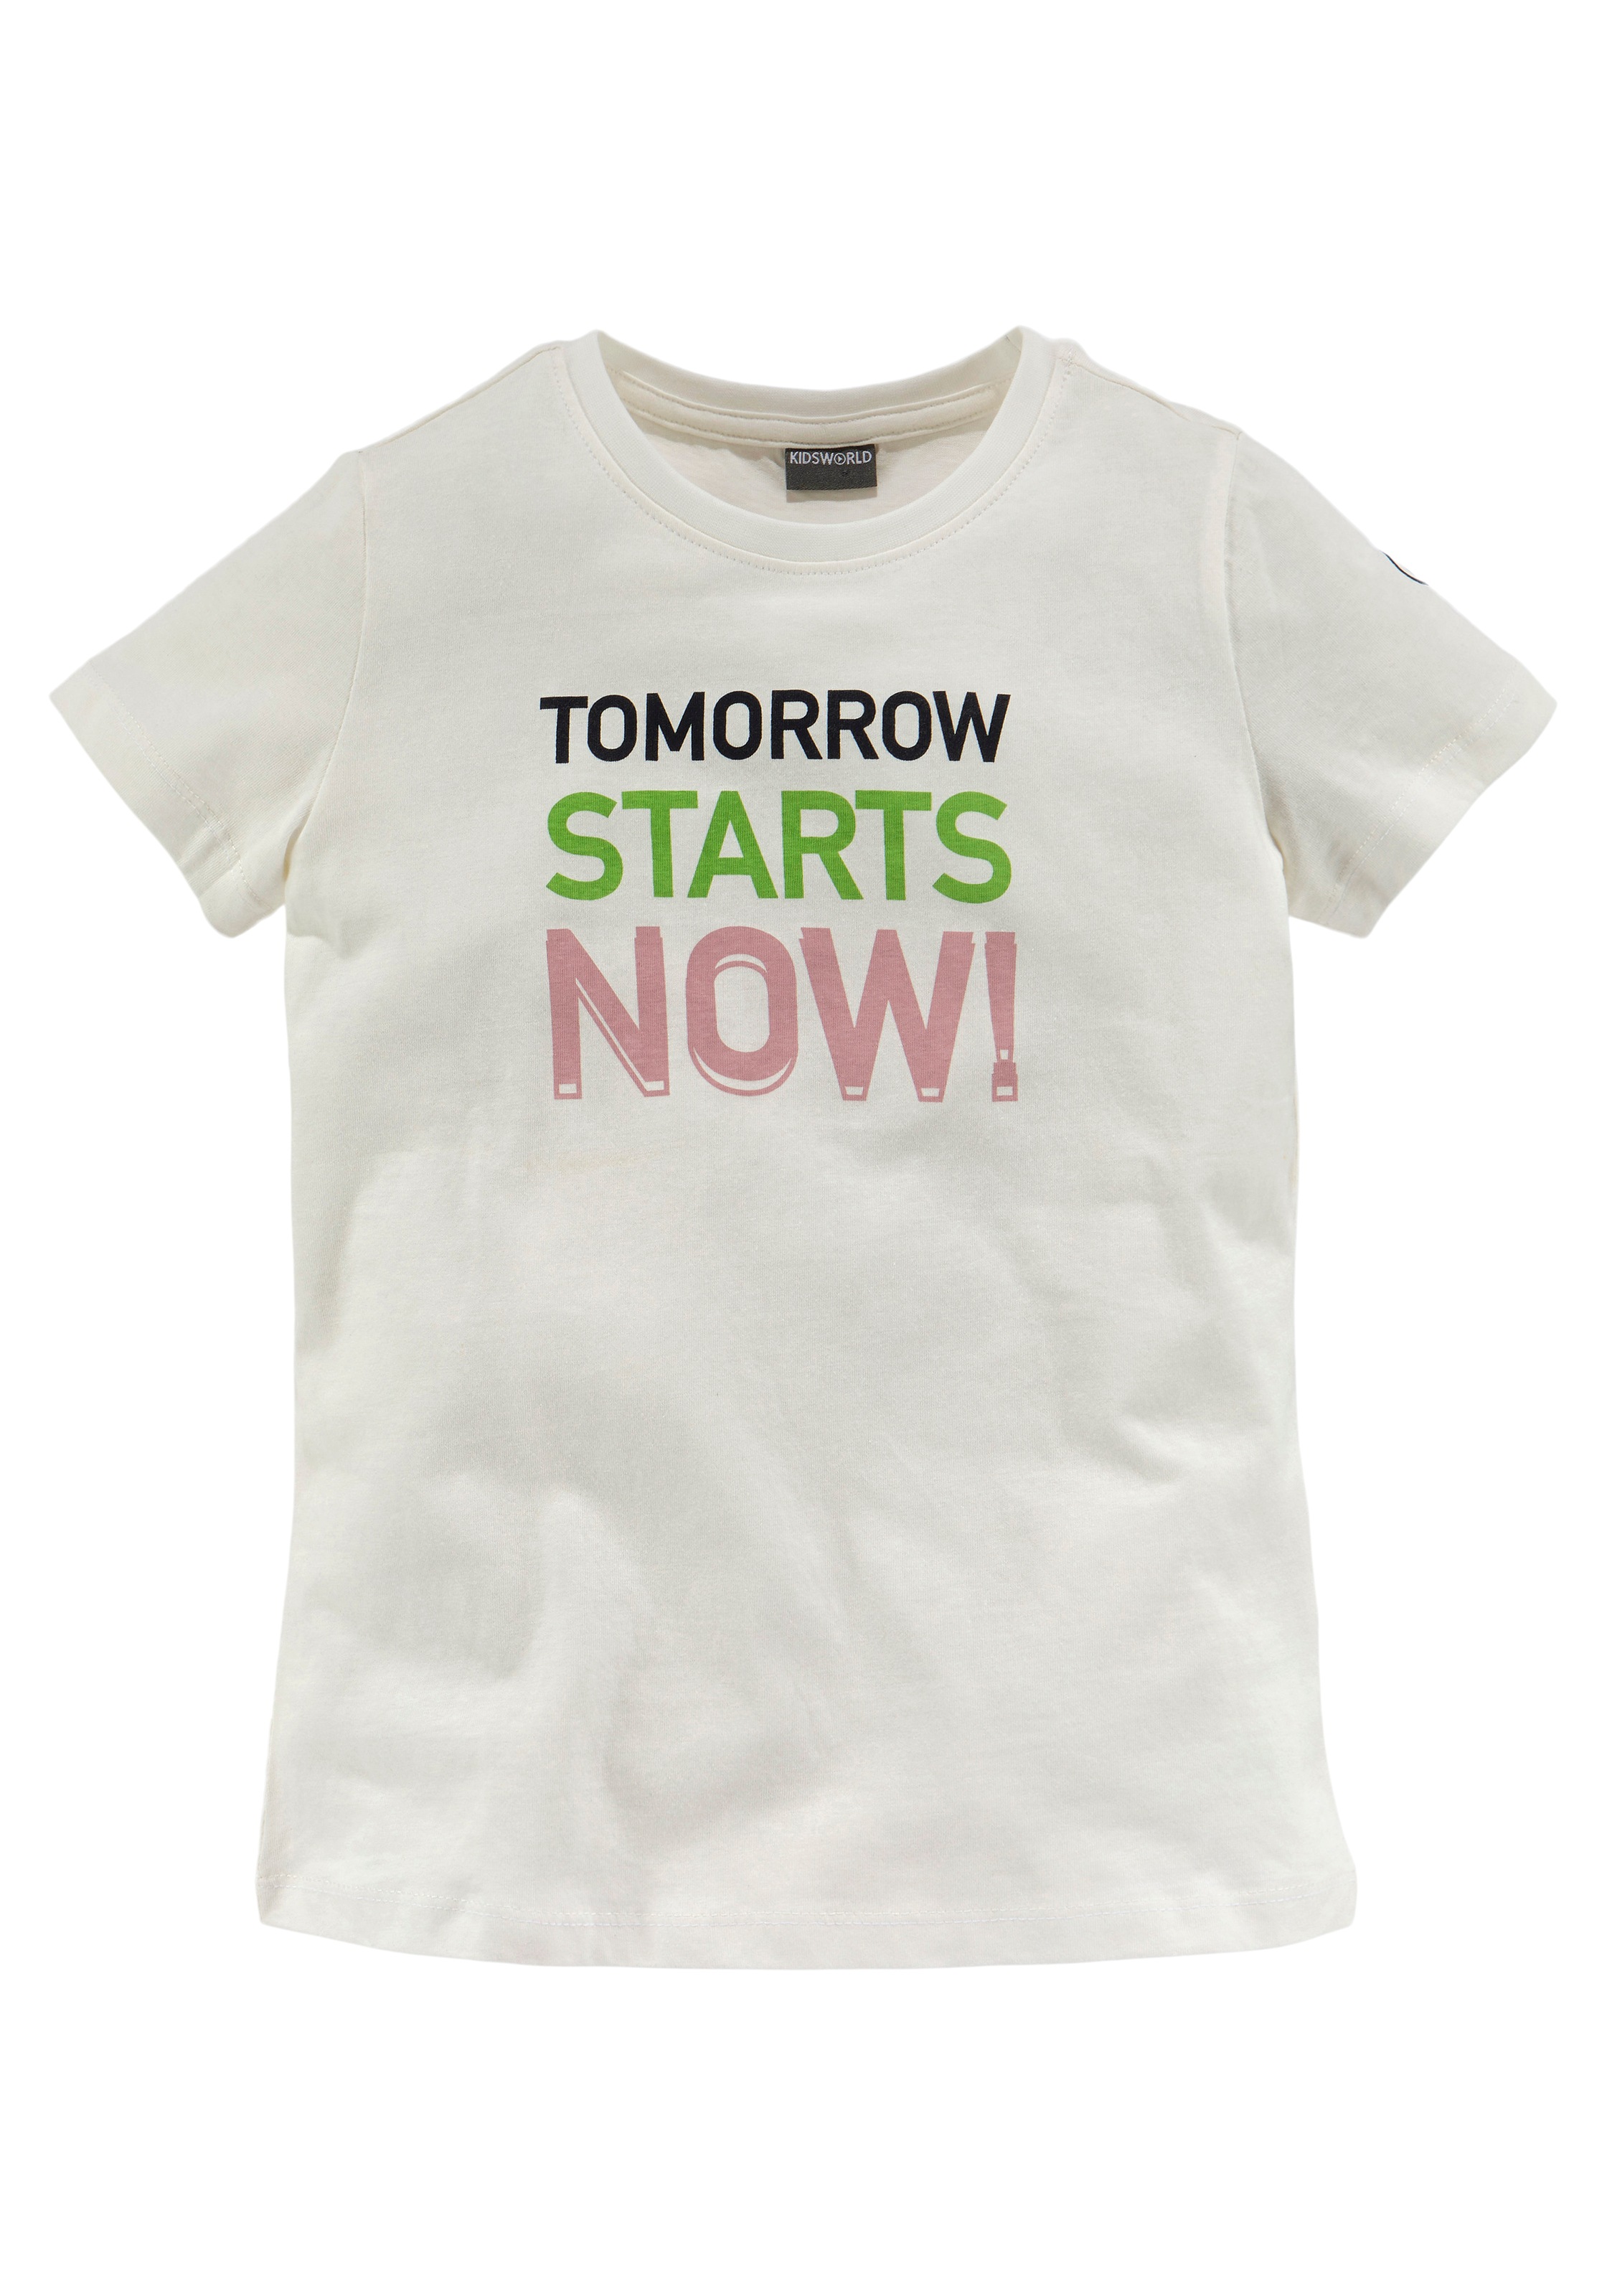 KIDSWORLD T-Shirt bestellen starts now!«, bei Druck OTTO »Tomorrow